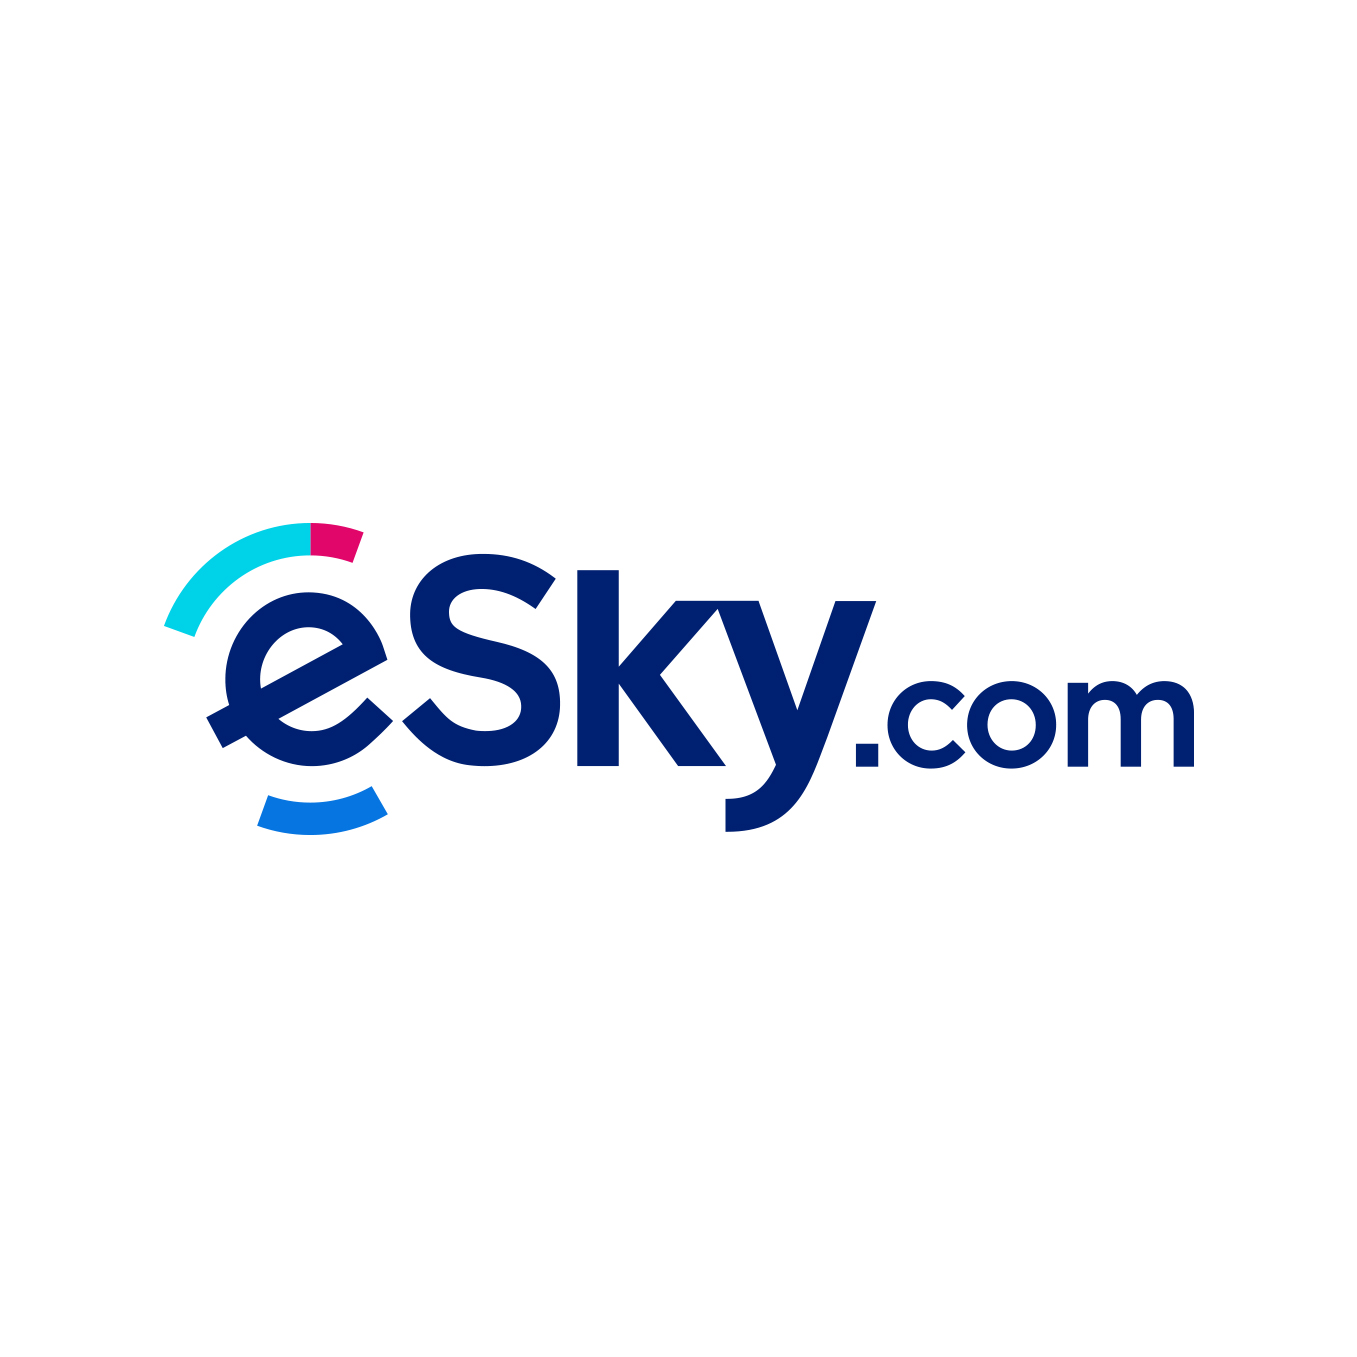 (c) Esky.com